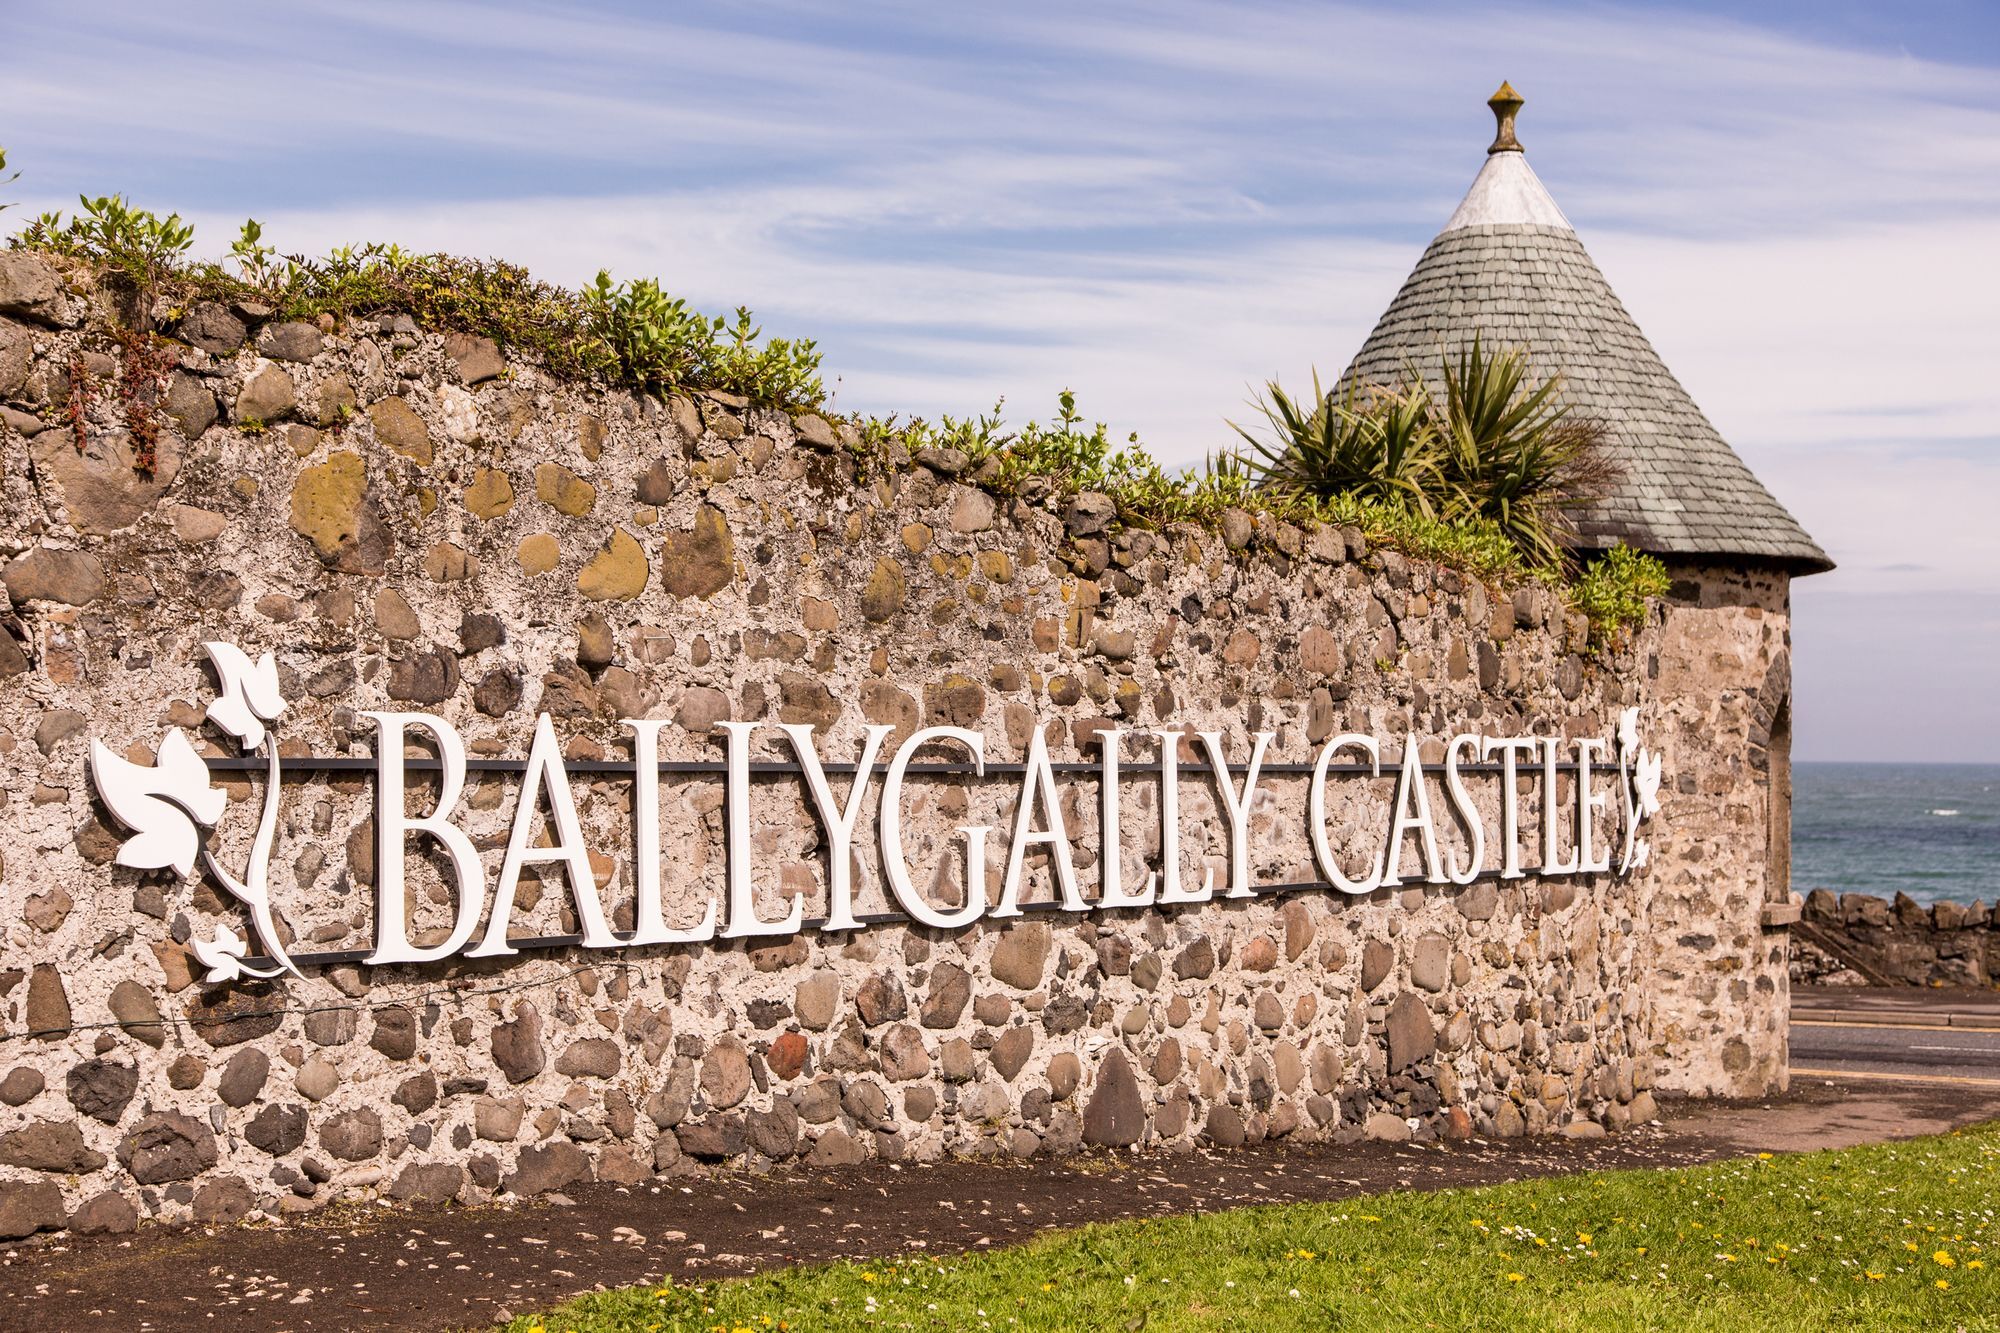 Ballygally Castle Larne Exterior photo